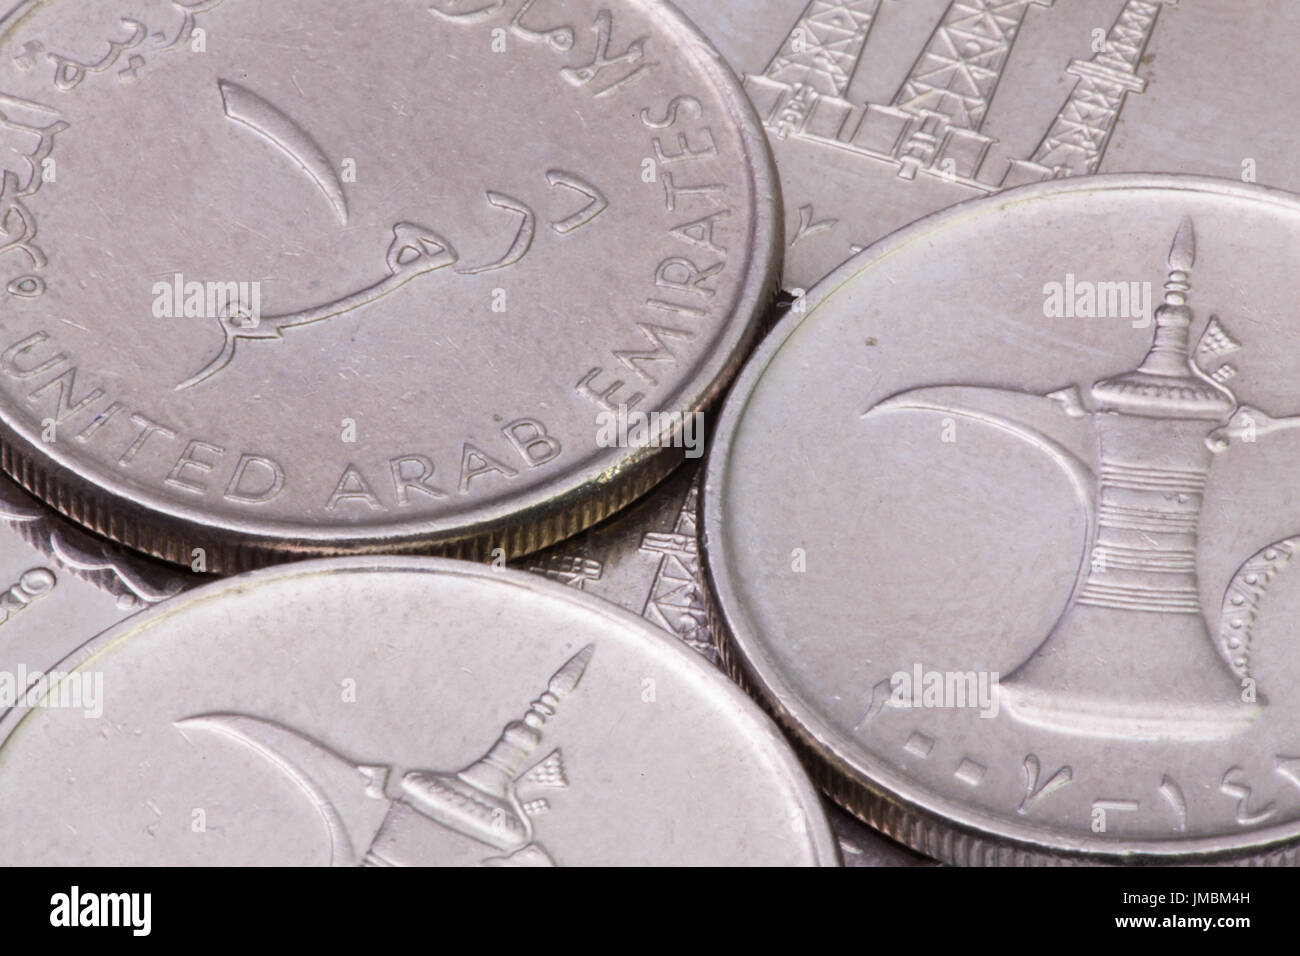 Dettaglio di diversi Emirati Arabi Uniti Dirhams monete sul tavolo. Foto Stock